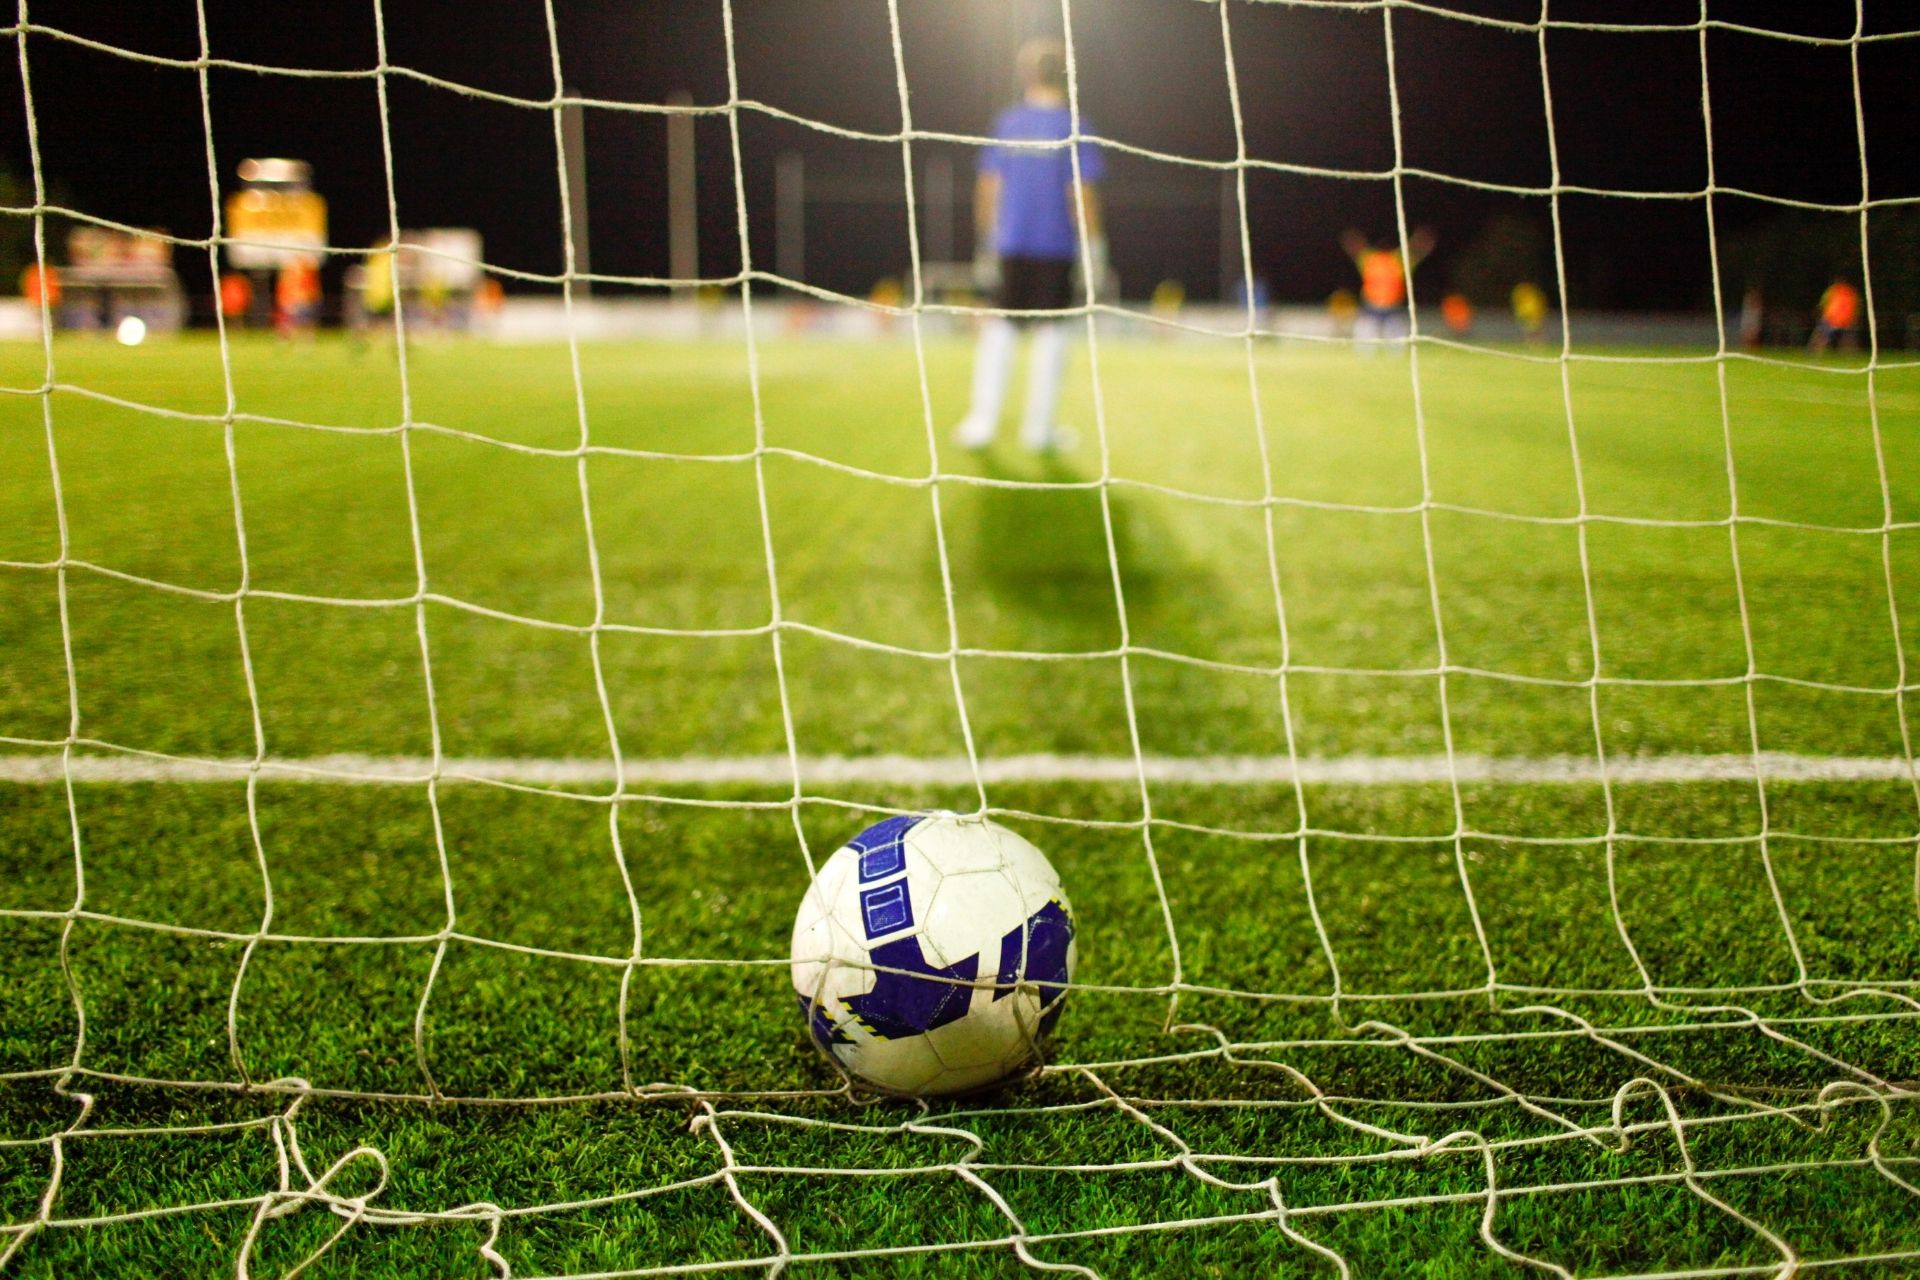 Dnia 2022-05-16 19:00 na stadionie St. James' Park odbył się mecz między Newcastle i Arsenal zakończony wynikiem 2-0